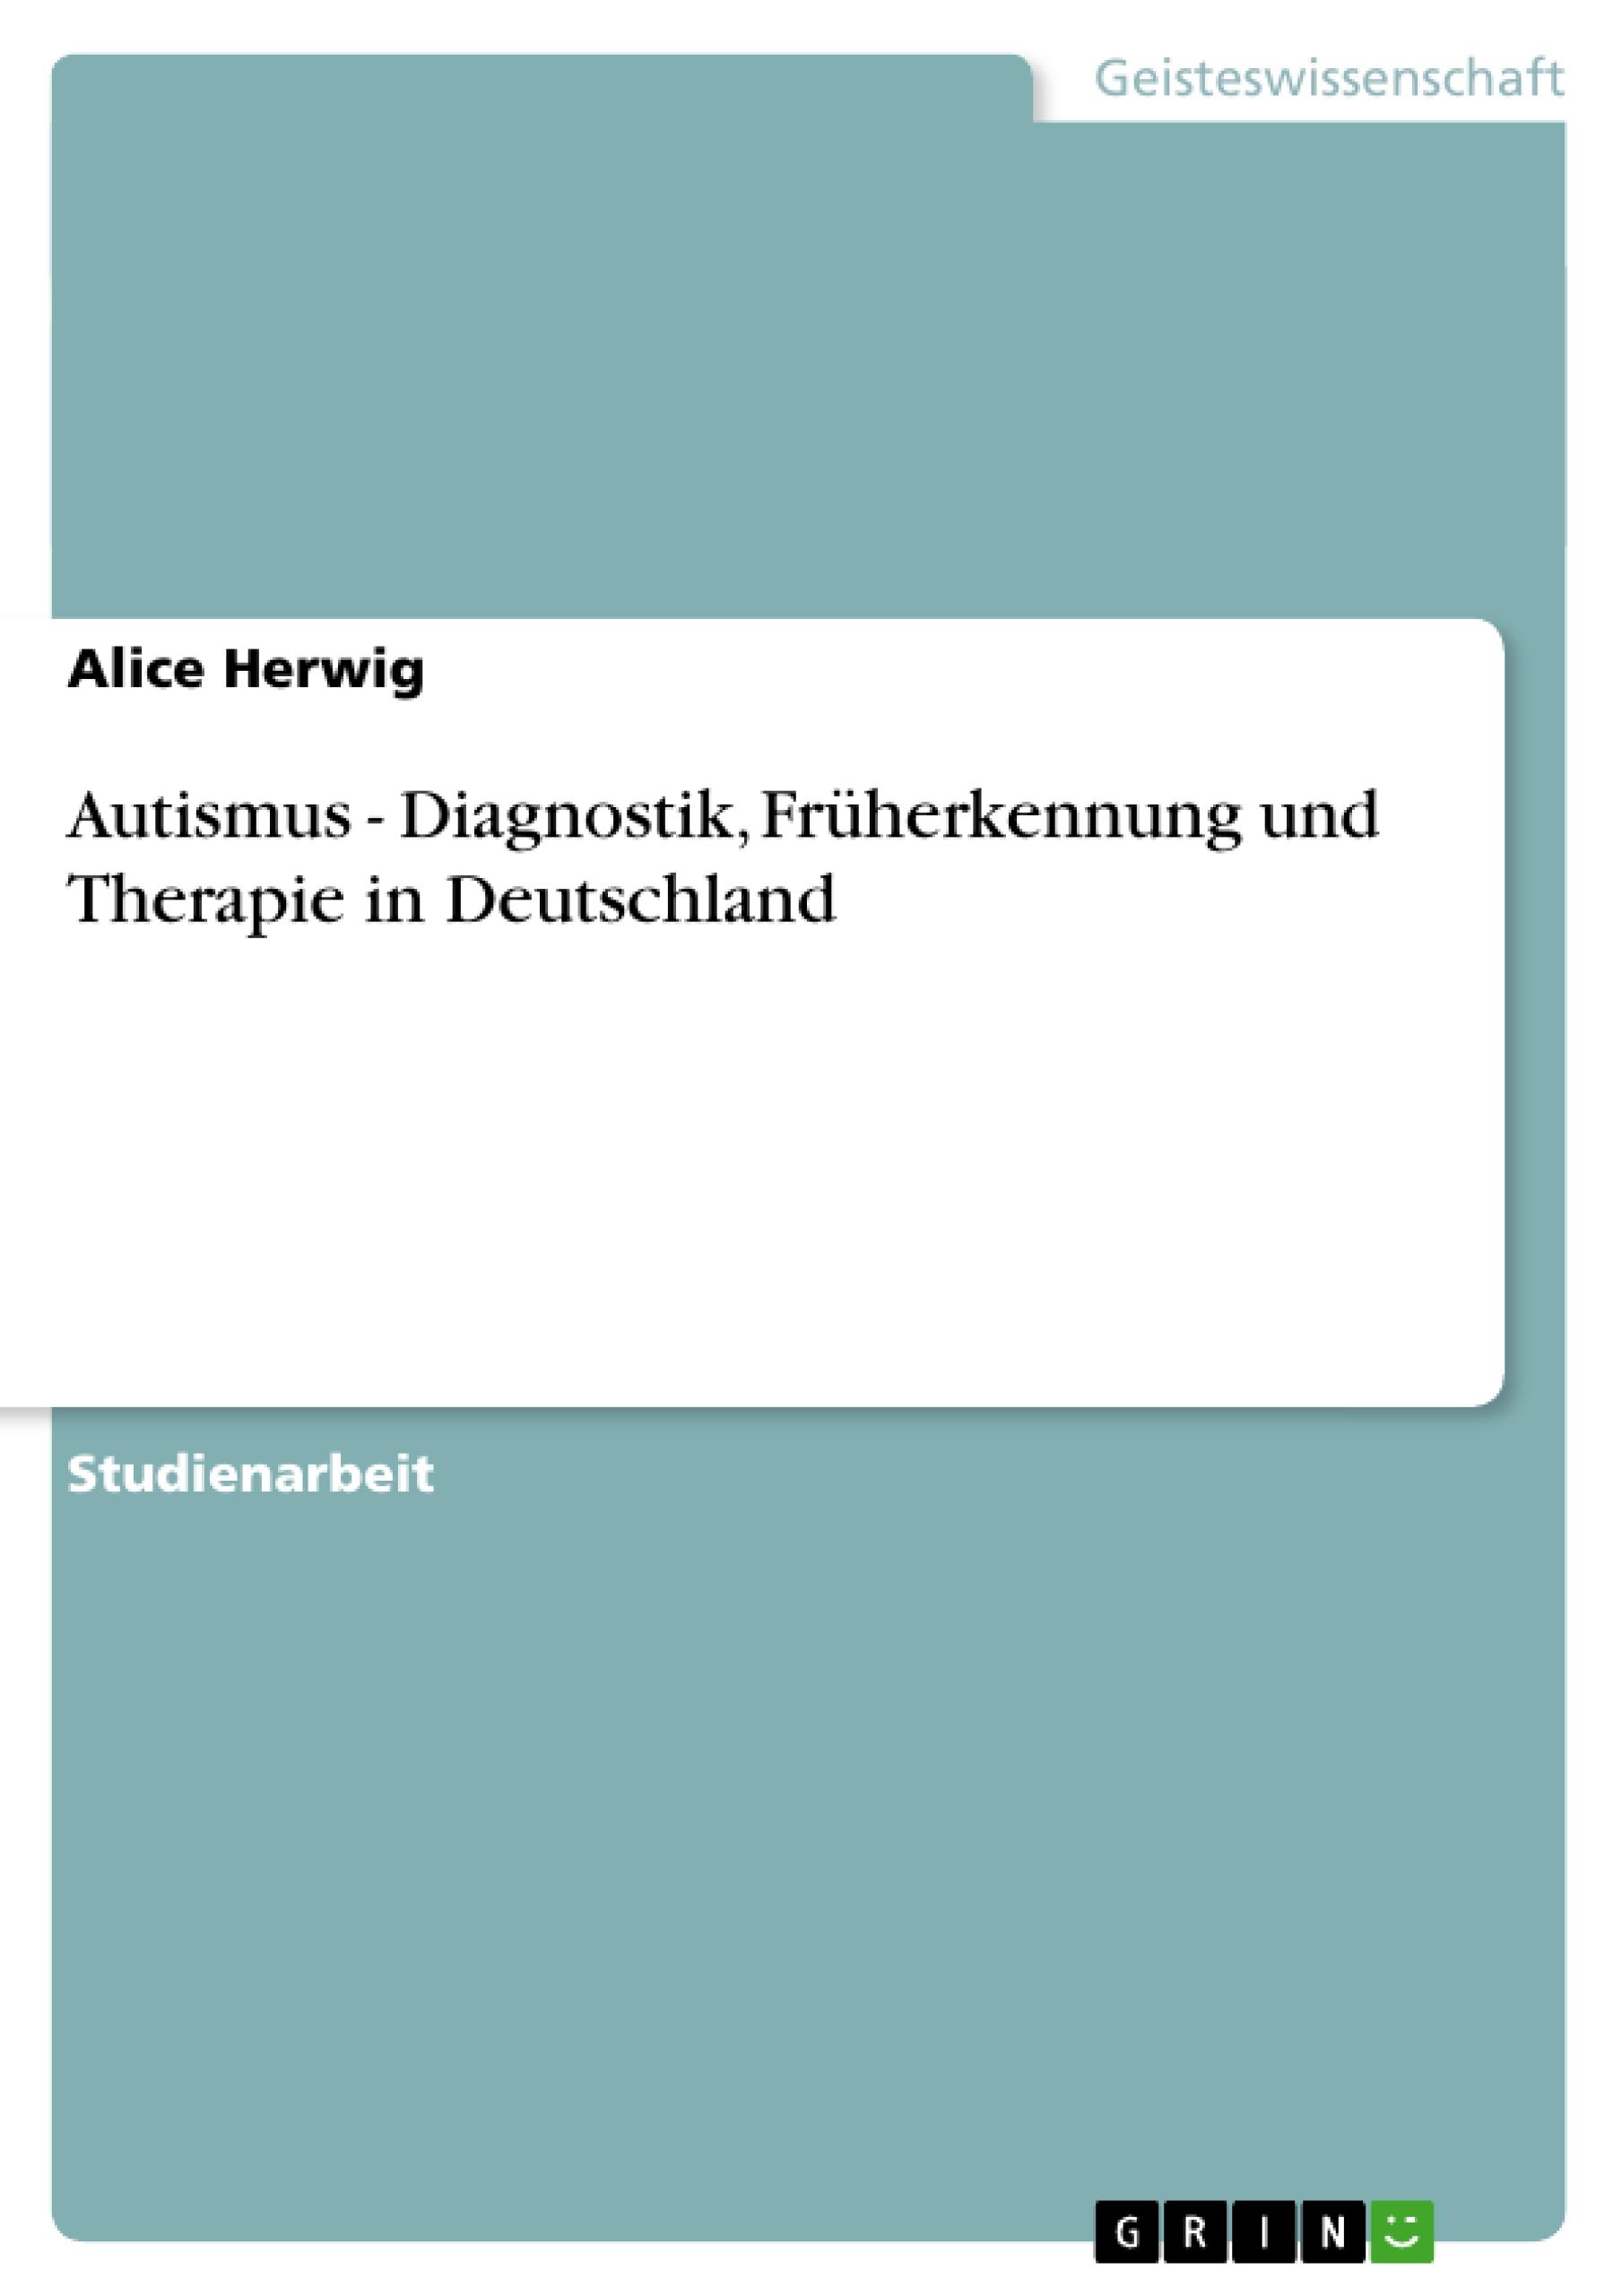 Autismus - Diagnostik, Frueherkennung und Therapie in Deutschland - Herwig, Alice